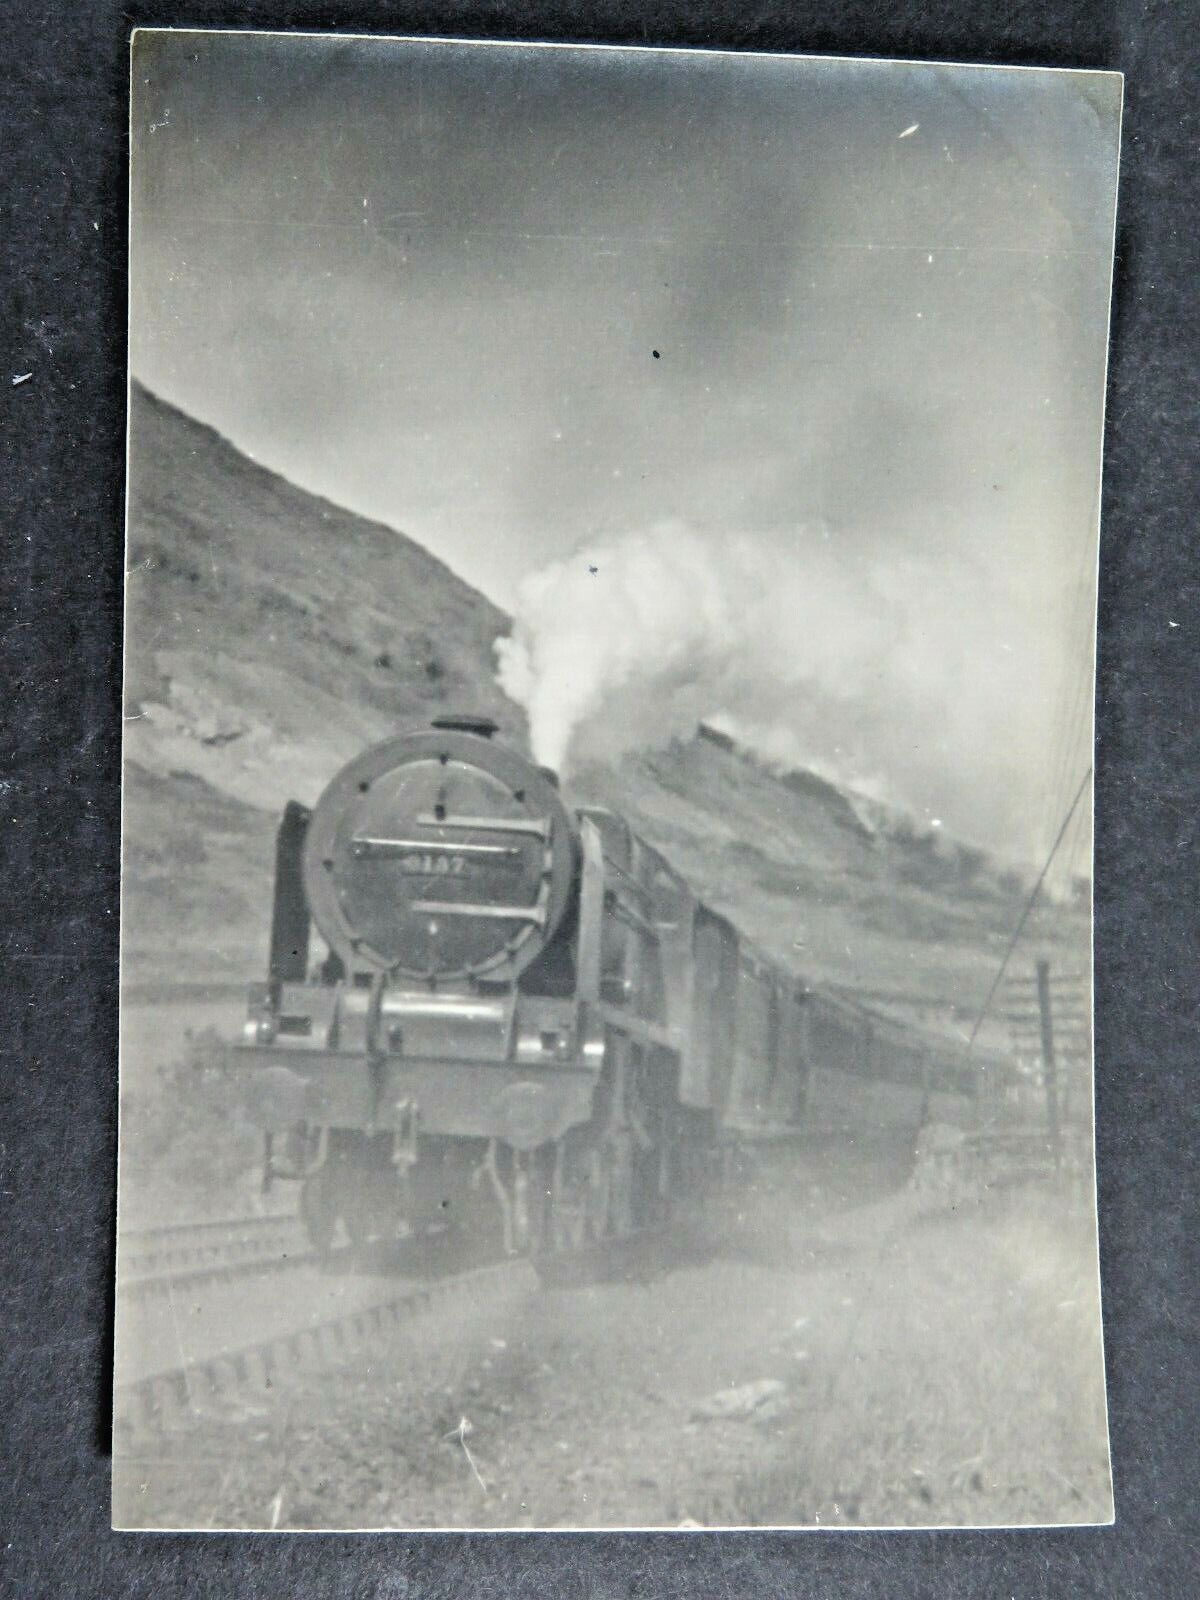 Antique Photograph LMS Royal Scot Steam Engine Locomotive #6137 Train  A7269